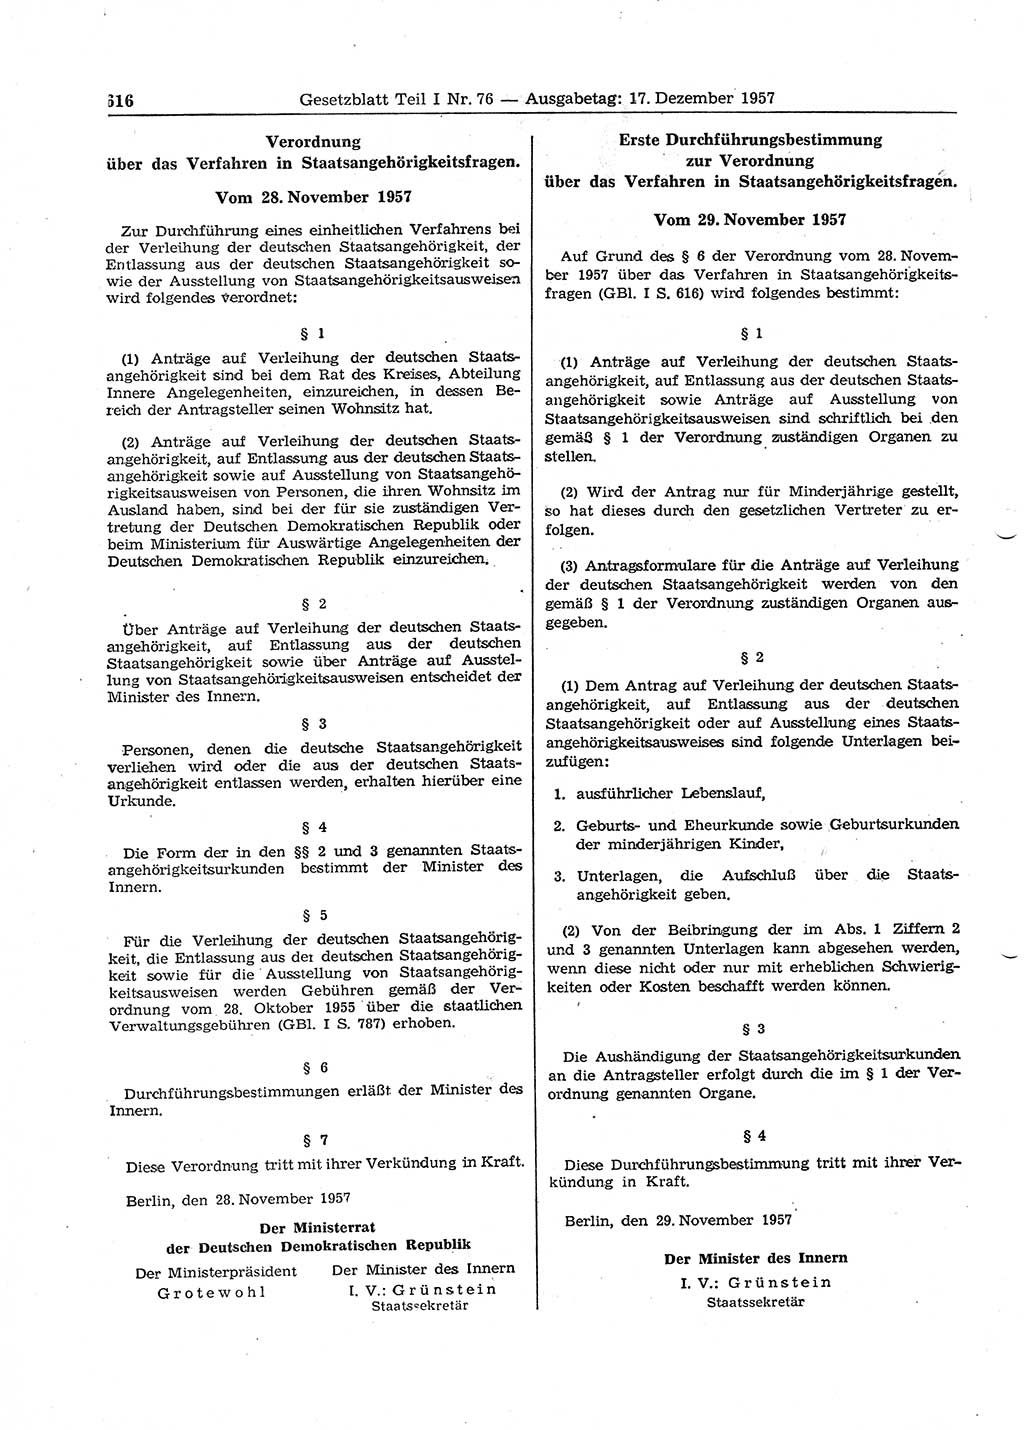 Gesetzblatt (GBl.) der Deutschen Demokratischen Republik (DDR) Teil Ⅰ 1957, Seite 616 (GBl. DDR Ⅰ 1957, S. 616)